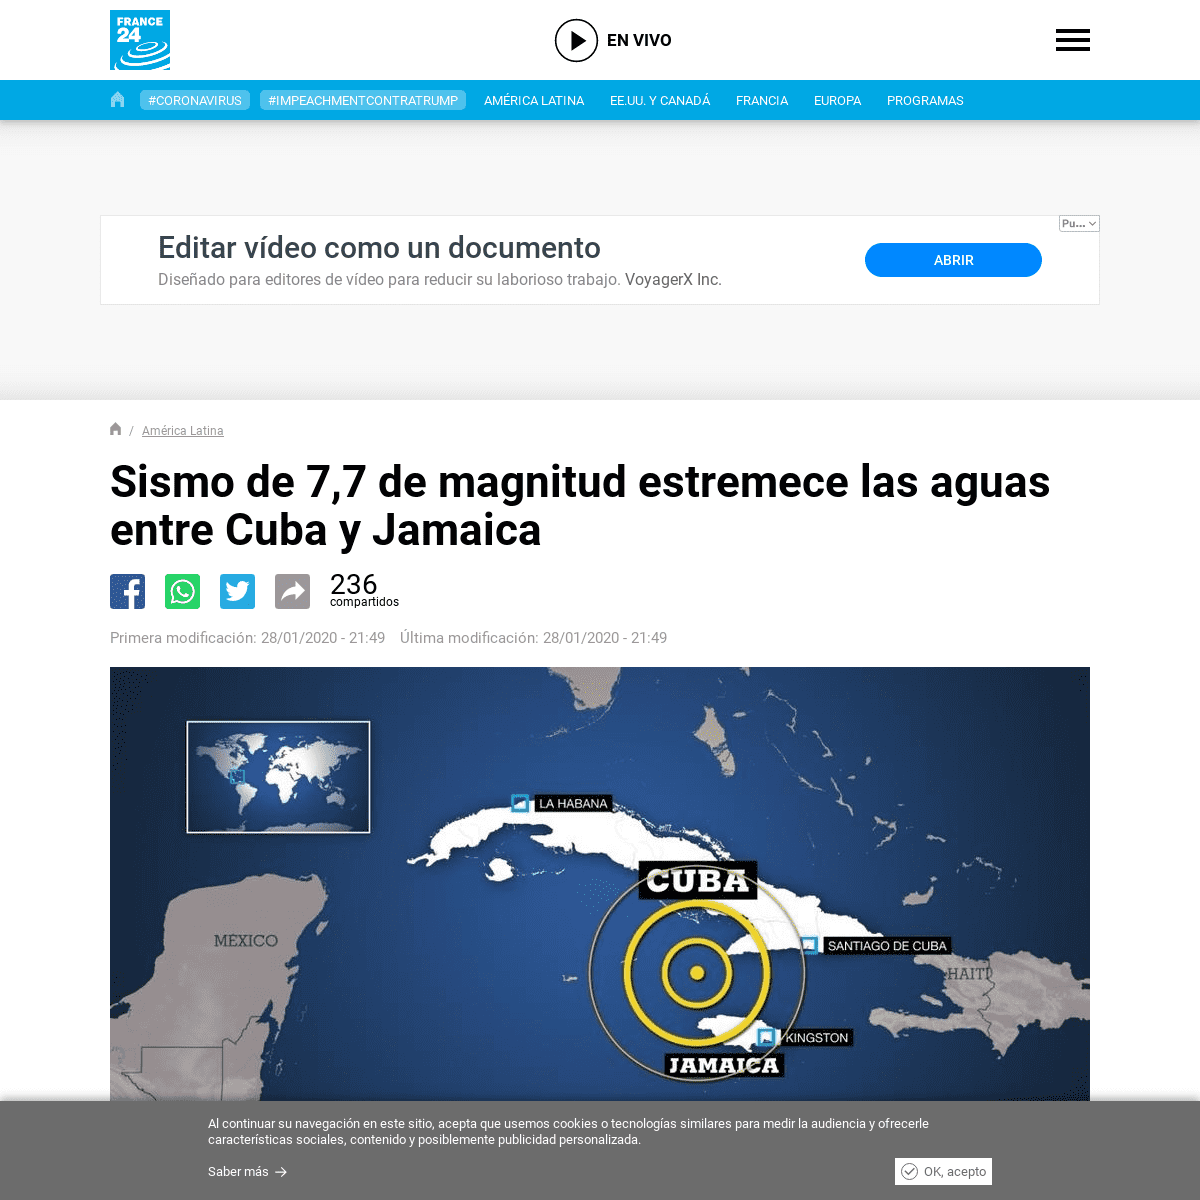 A complete backup of www.france24.com/es/20200128-emiten-alerta-de-tsunami-en-el-caribe-tras-potente-sismo-entre-cuba-y-jamaica